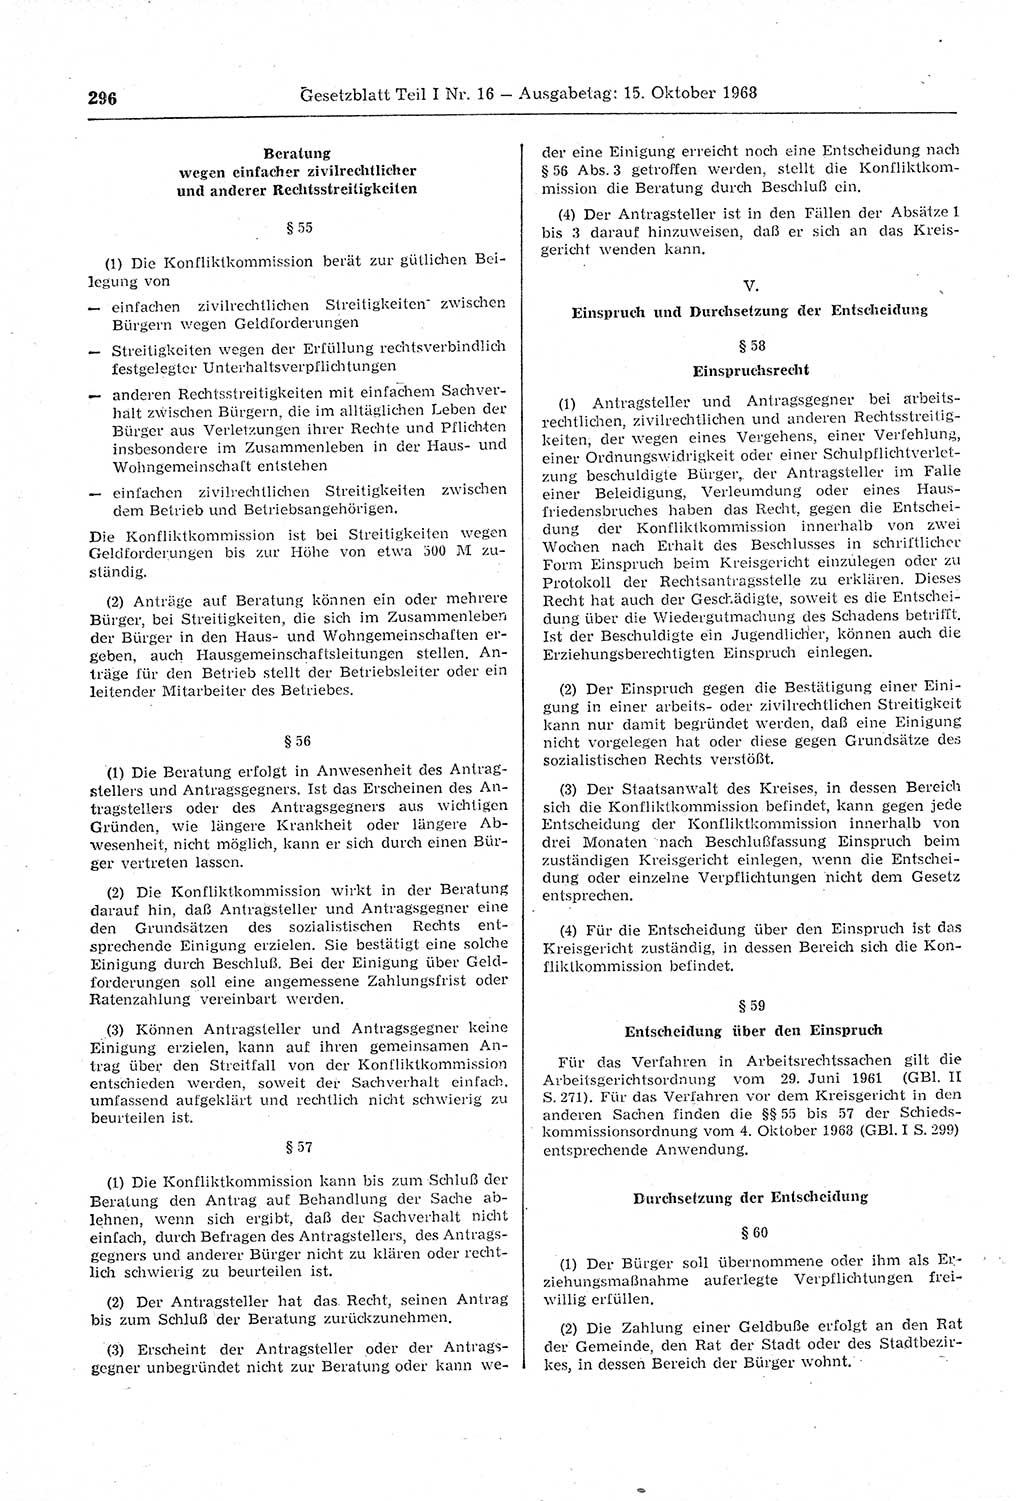 Gesetzblatt (GBl.) der Deutschen Demokratischen Republik (DDR) Teil Ⅰ 1968, Seite 296 (GBl. DDR Ⅰ 1968, S. 296)